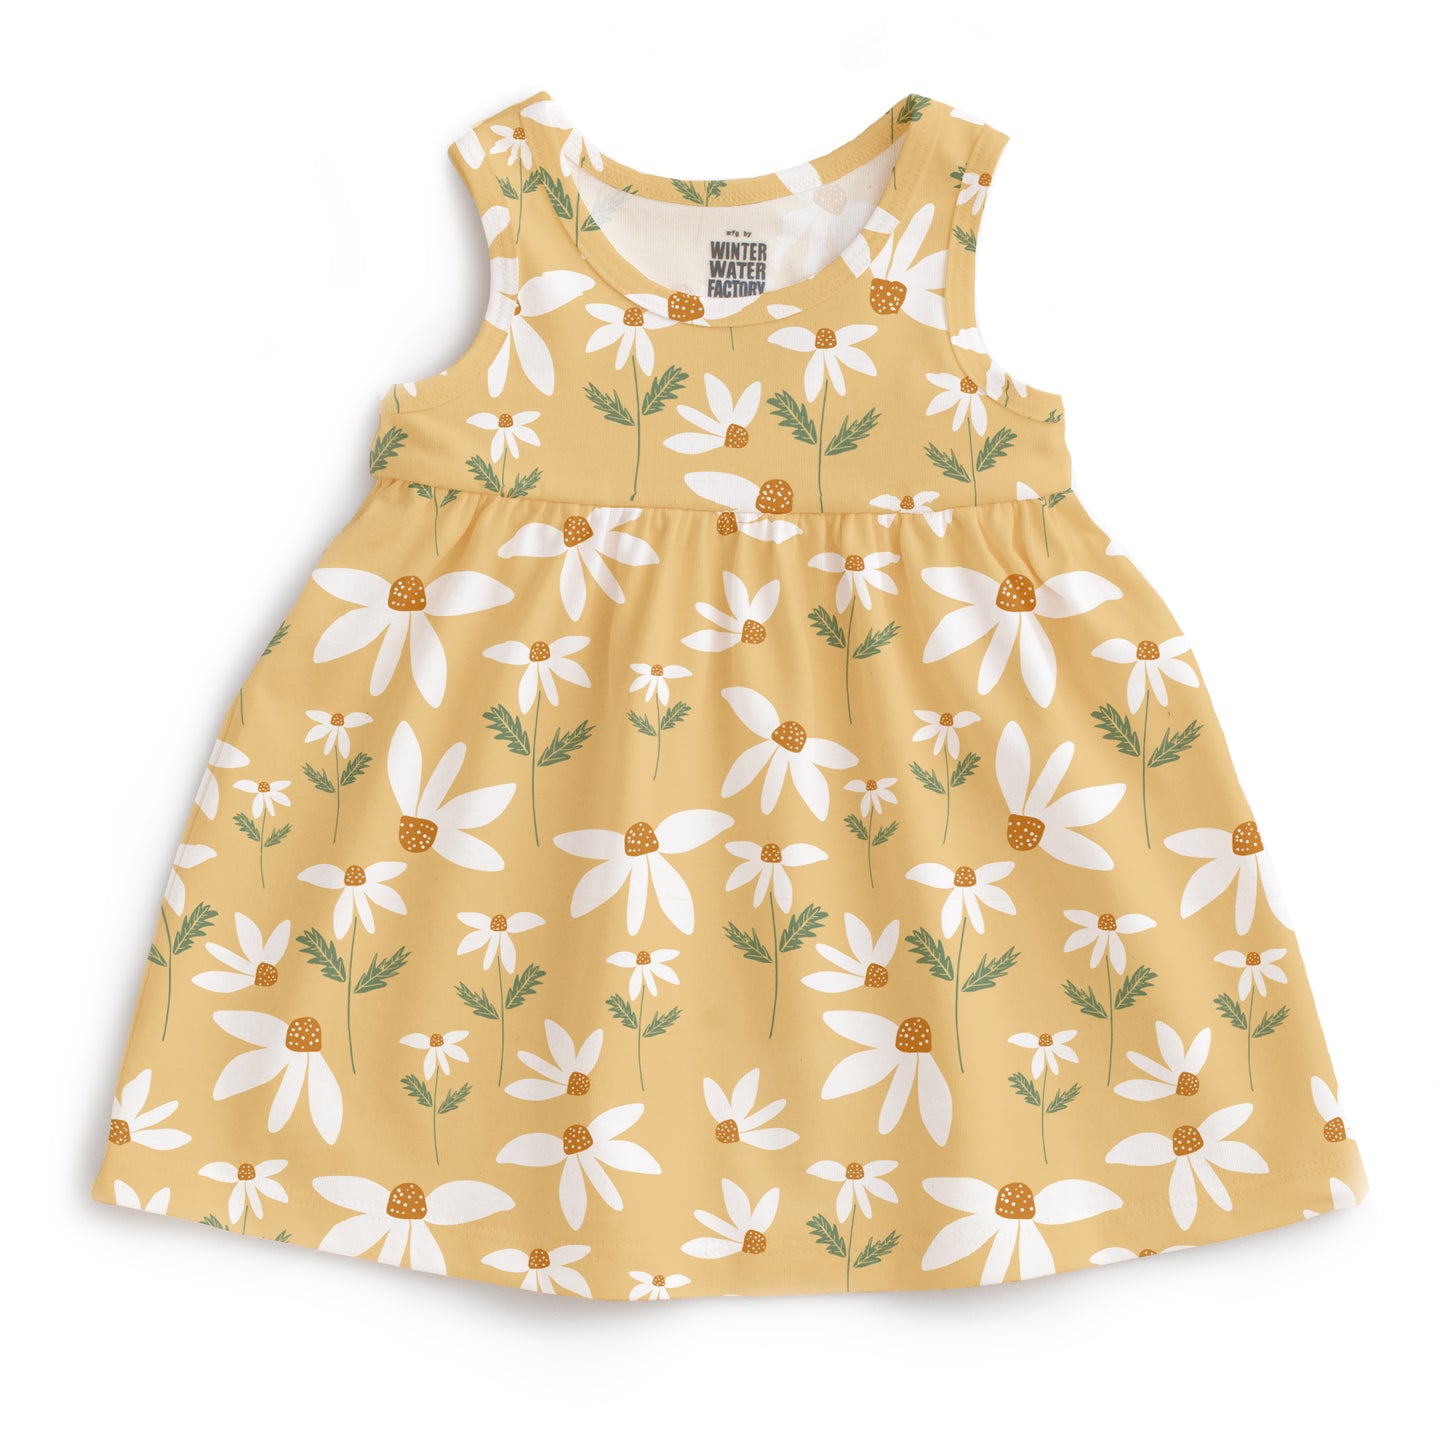 Alna Baby Dress - Daisies Yellow